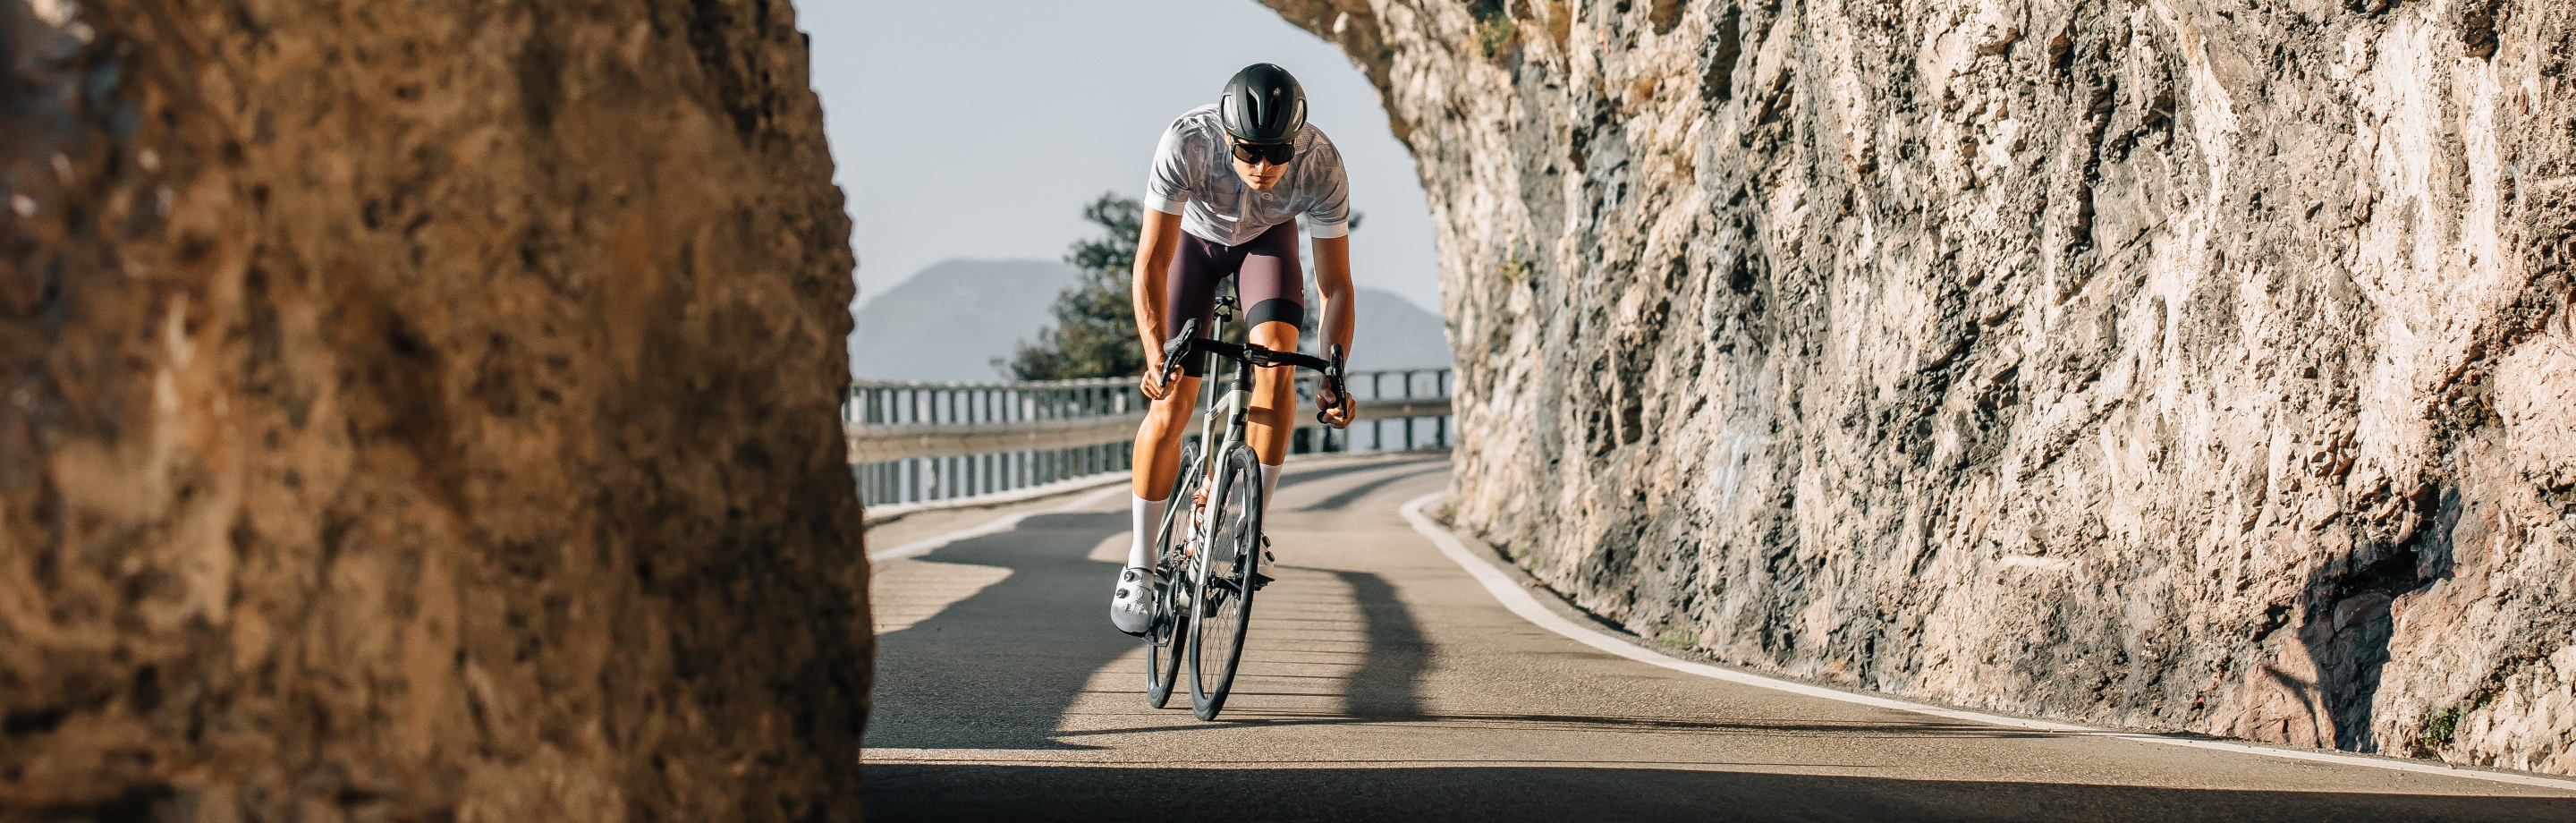 GONSO fietsbroeken – functionele kleding voor meer comfort bij het biken